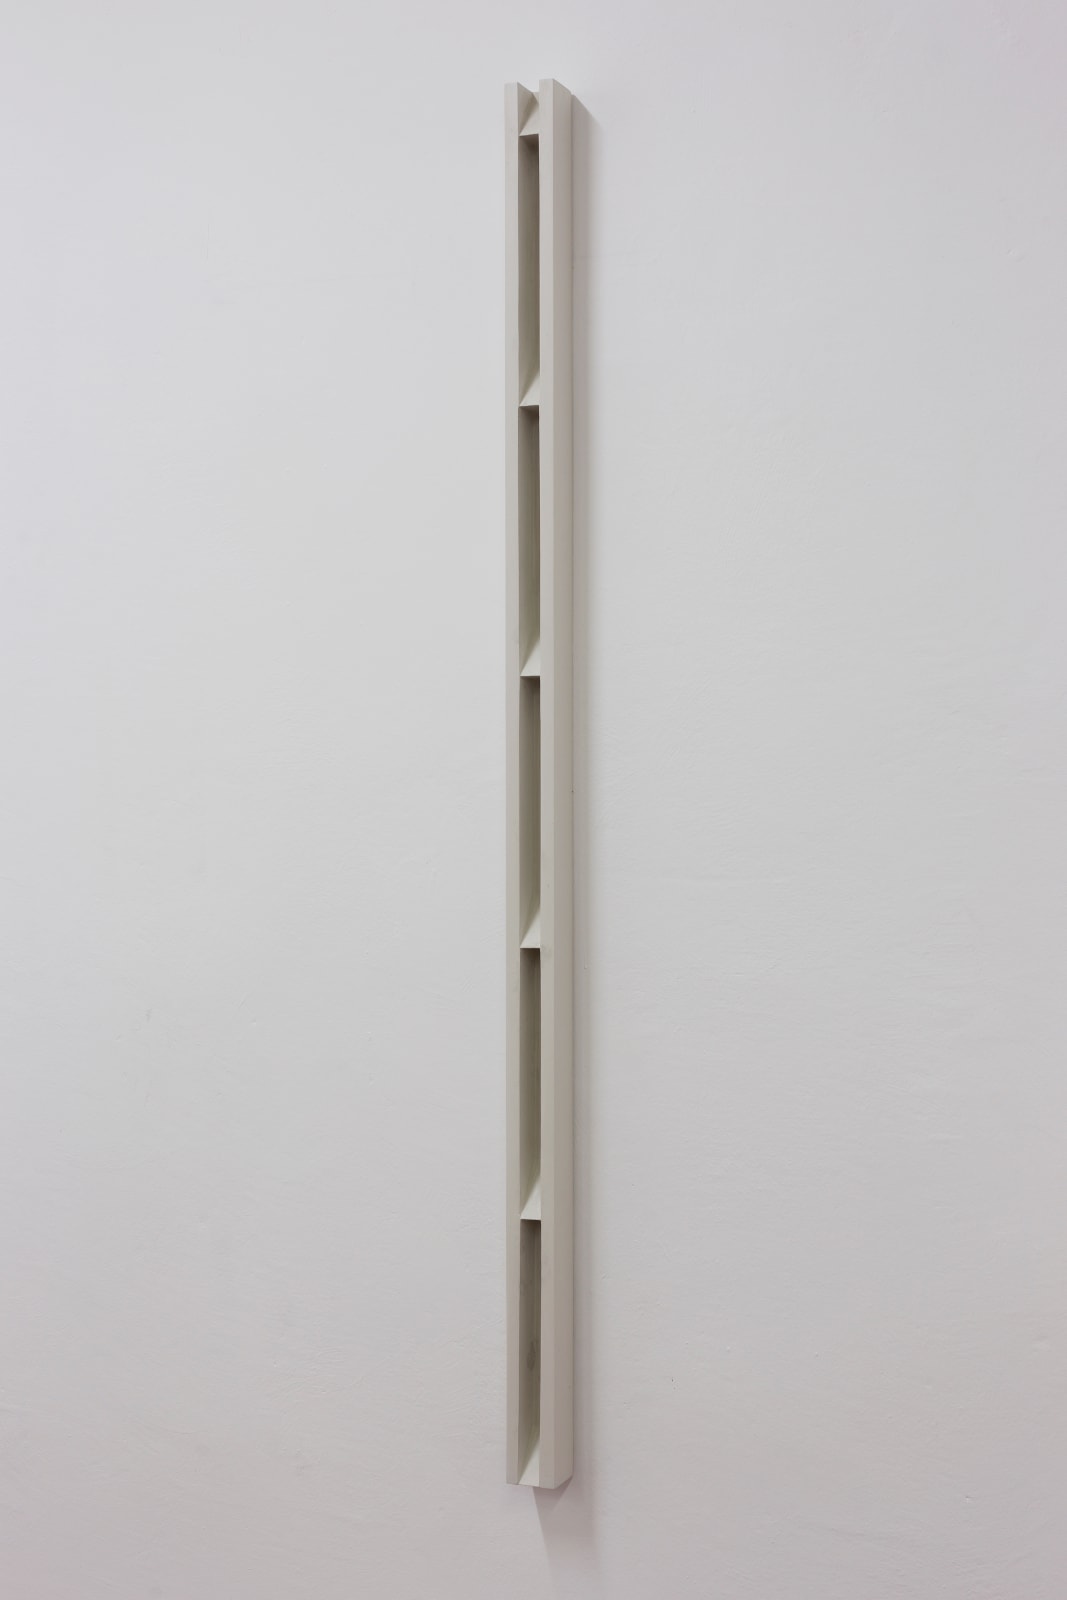 Florian Pumhösl, Plaster Object #1 (Formed speech), 2016 | Dvir Gallery